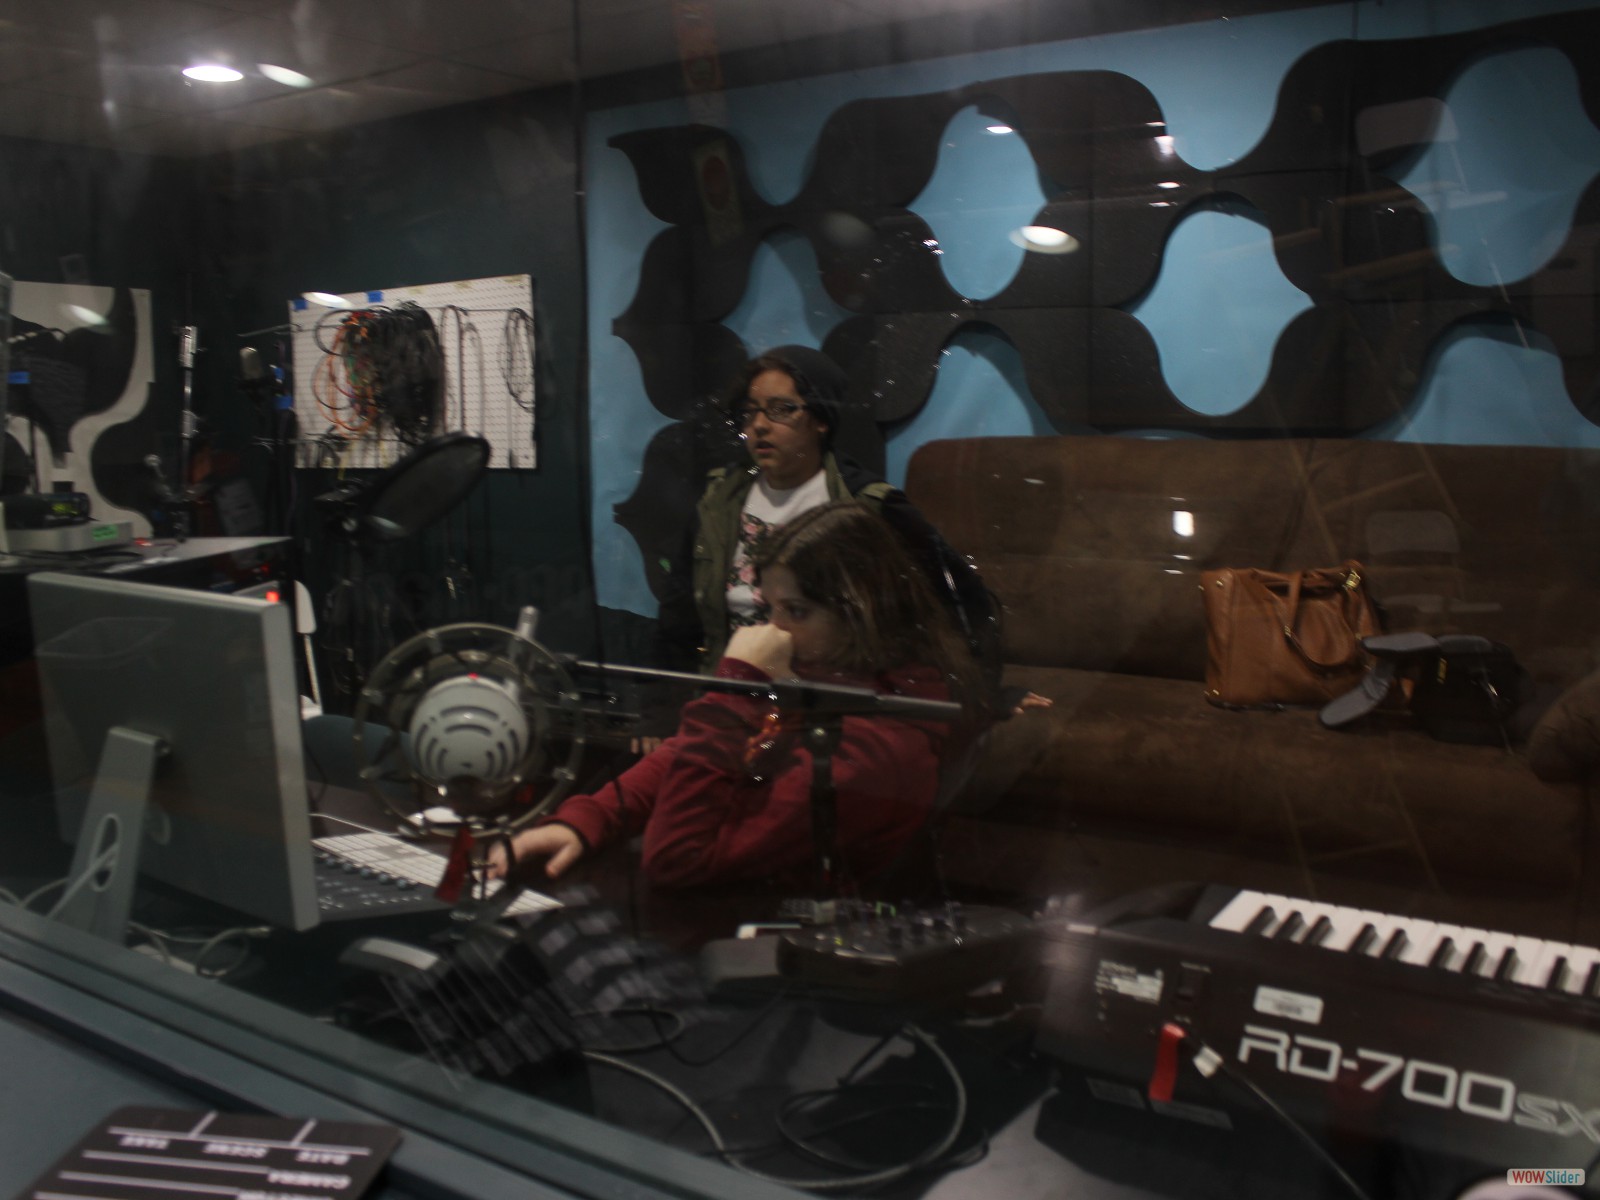 Sofia and Rocio, working in the studio